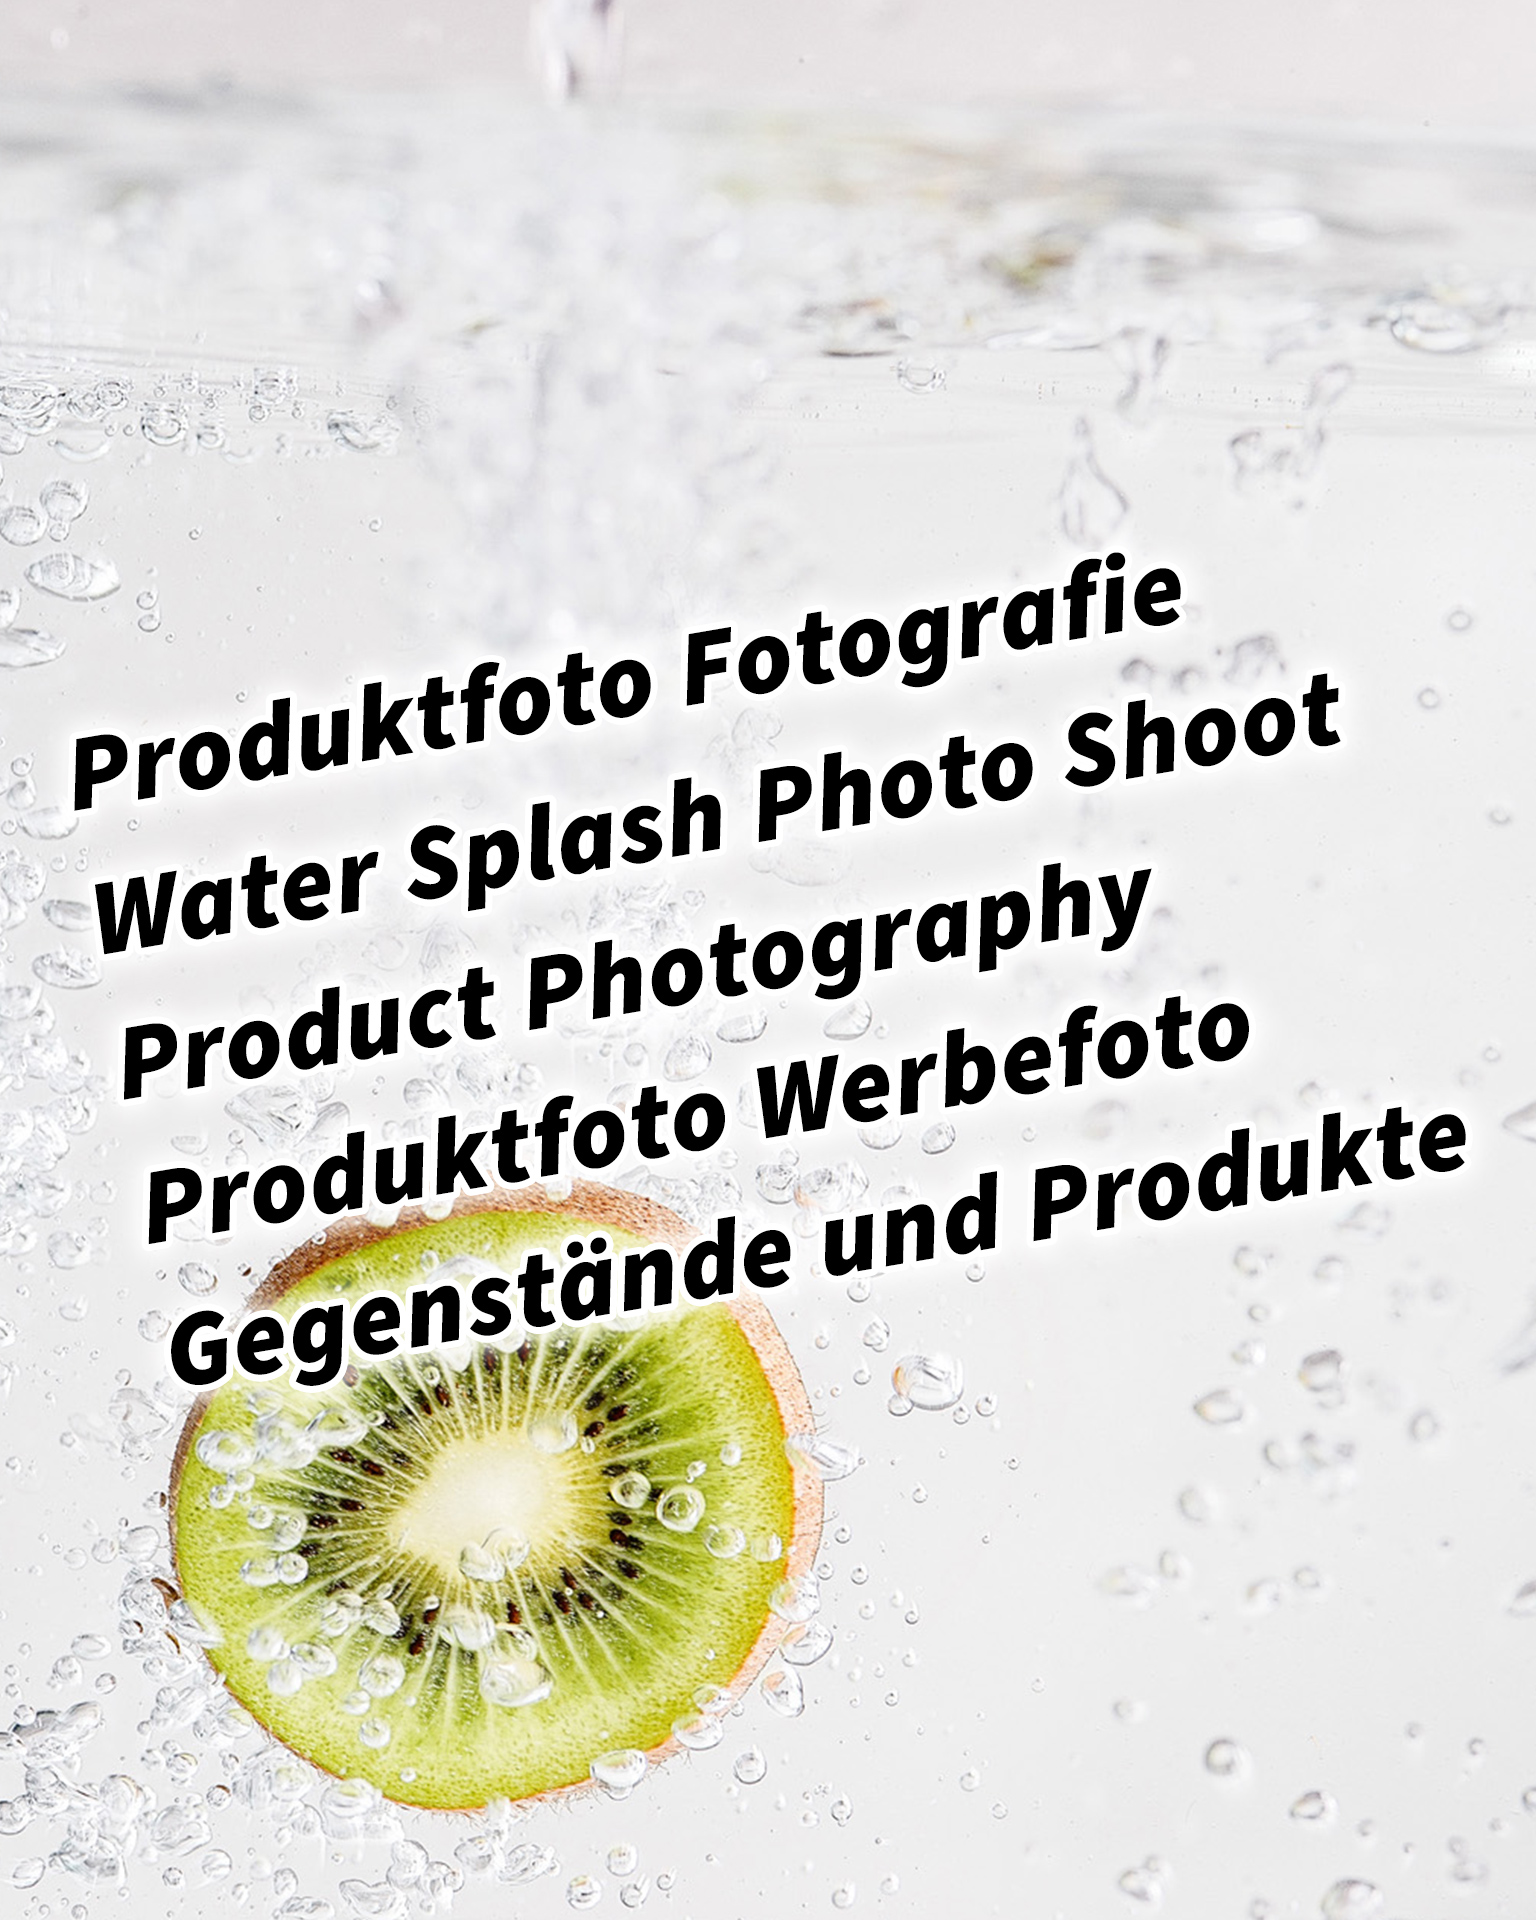 Produktfoto Fotografie Water Splash Photo Shoot Product Photography Produktfoto Werbefoto Gegenstände und Produkte